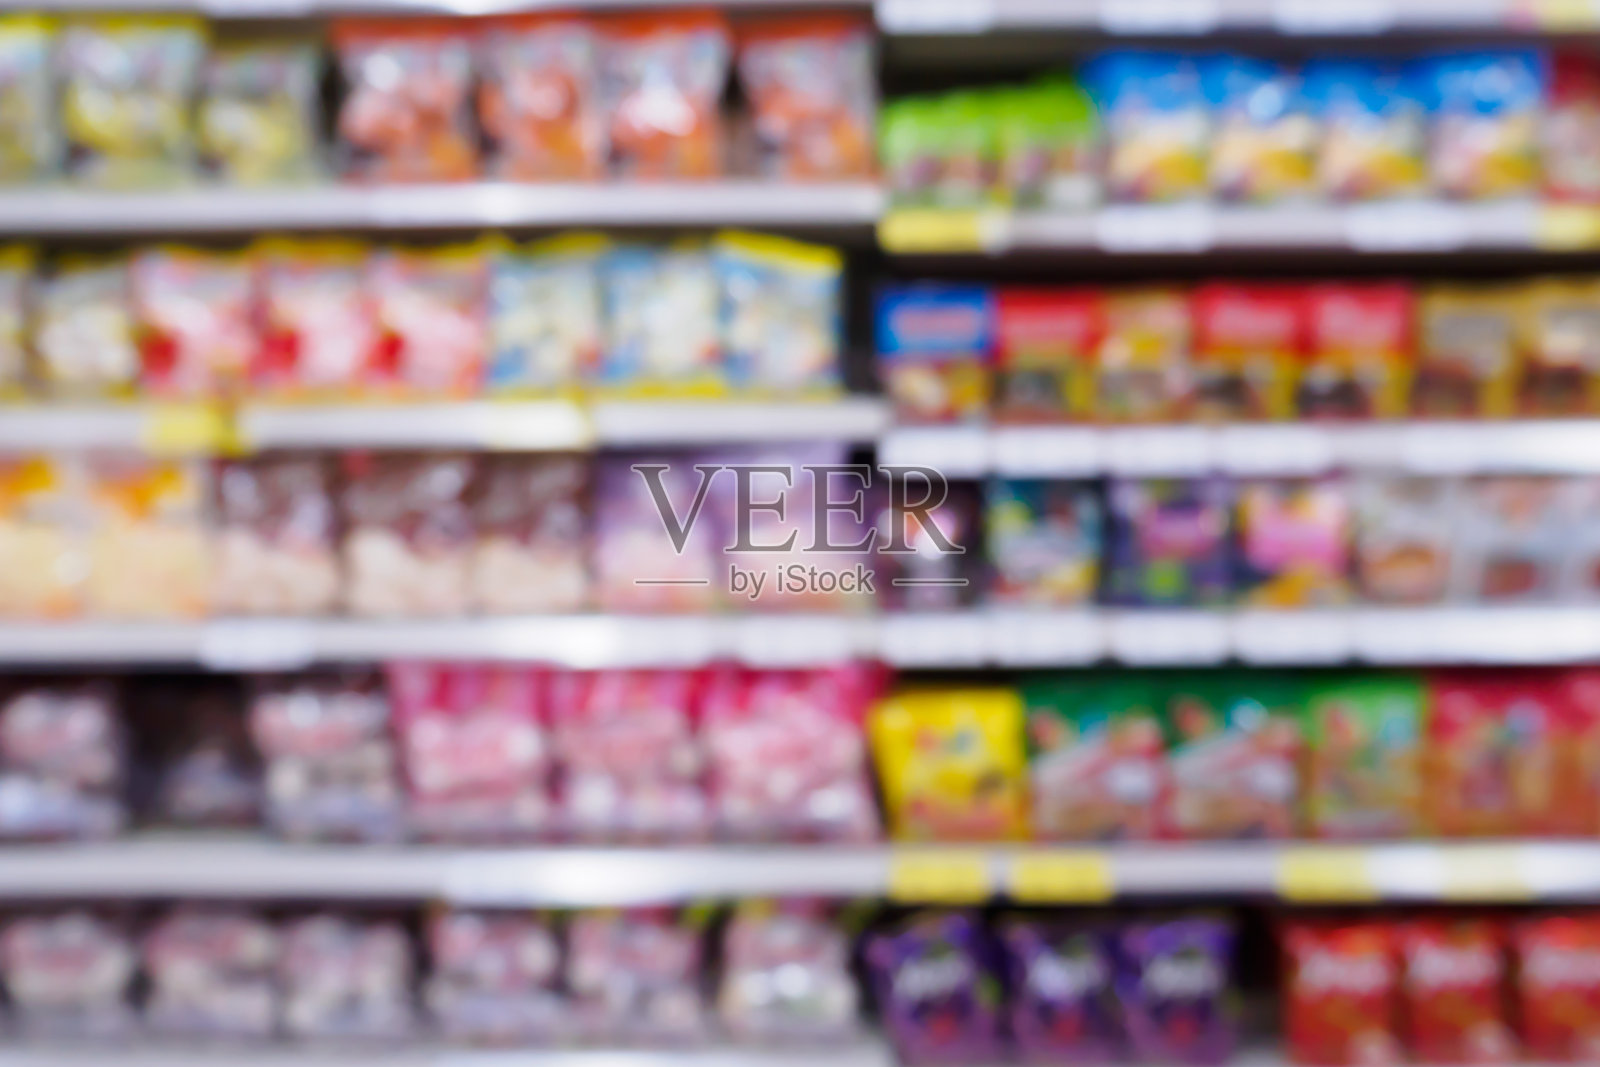 抽象模糊超市的货架上摆满了各种零食、薯片等食品产品照片摄影图片